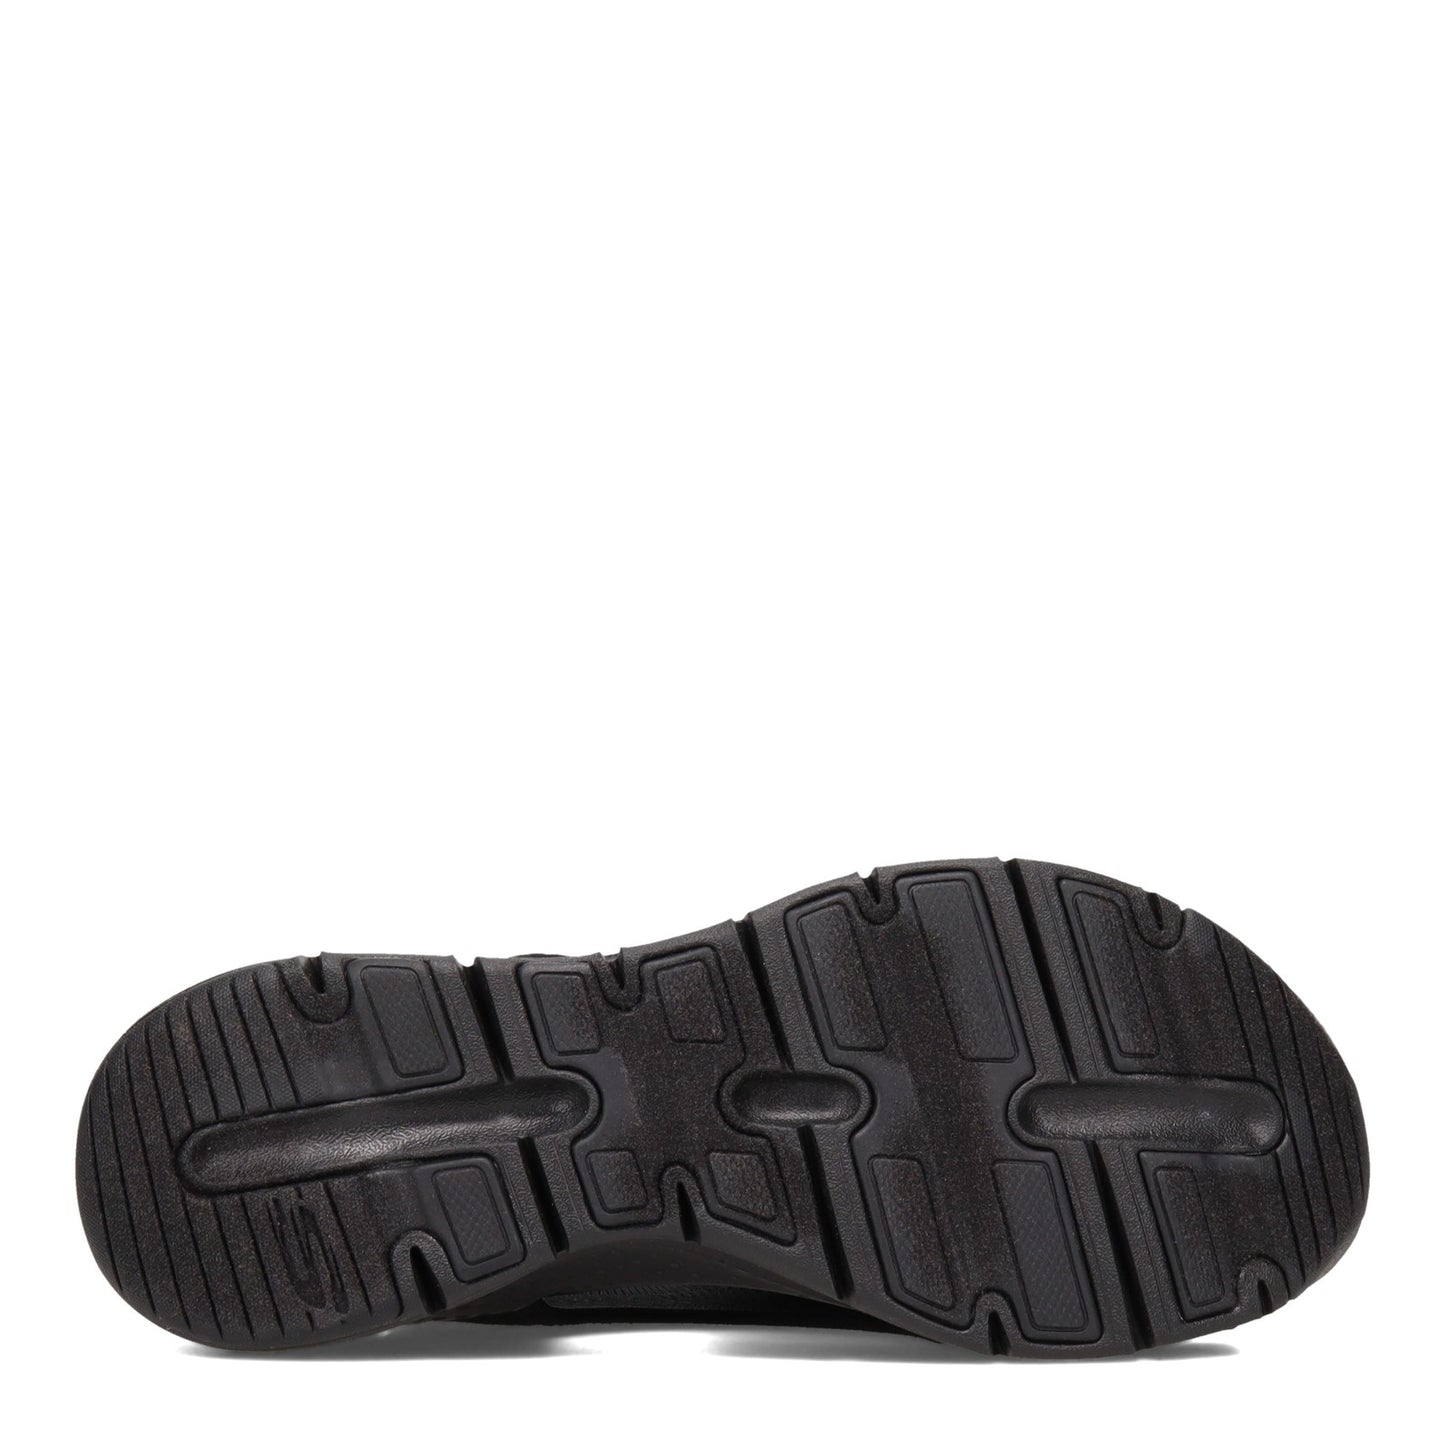 Peltz Shoes  Women's Skechers Arch Fit - City Catch Sandal Black 119236-BBK